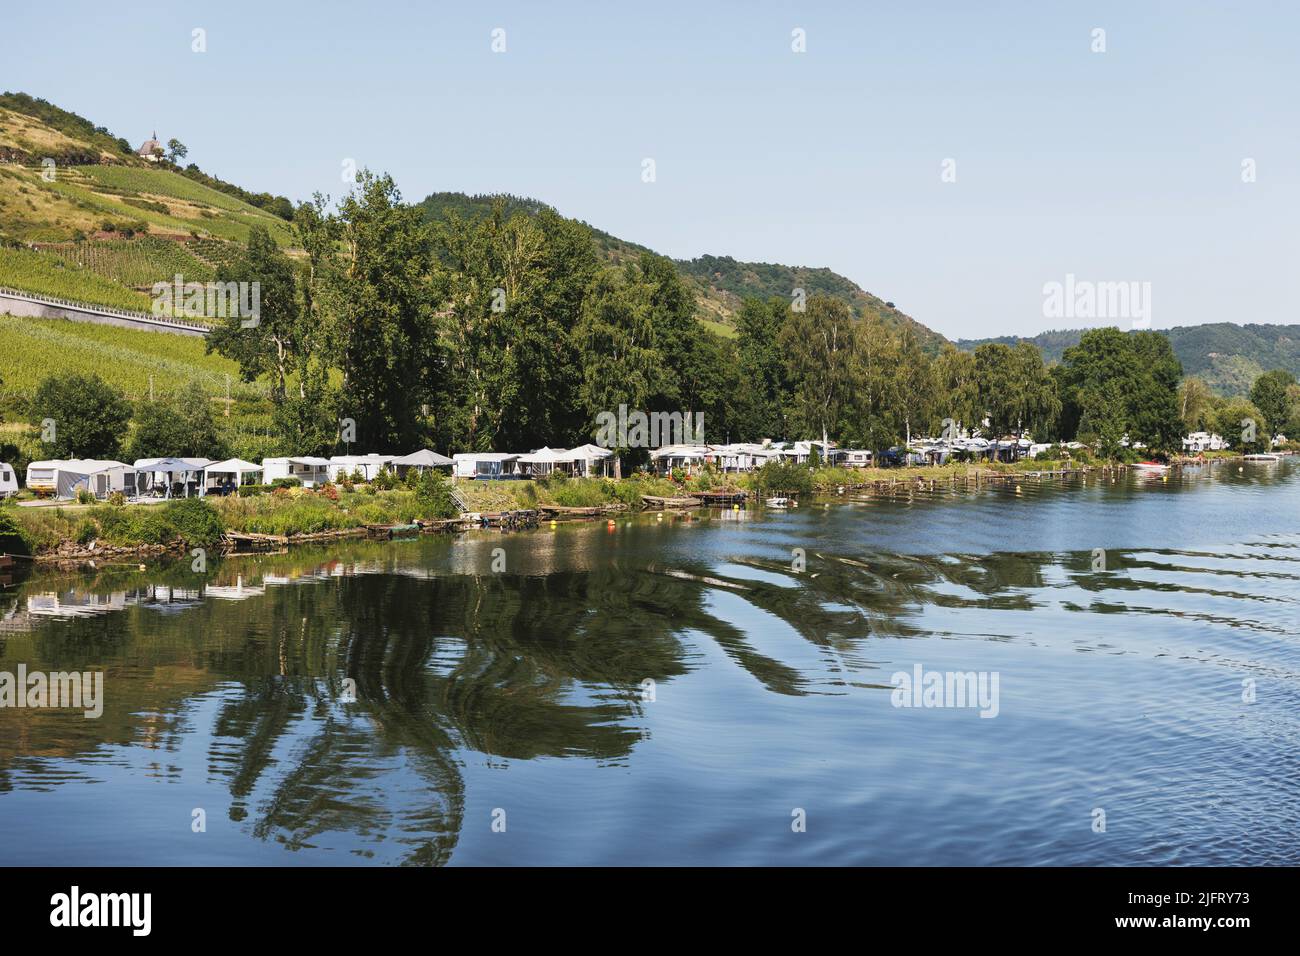 Camping, wildes Campen in Zelten und Wohnwagen am Rheinufer in Deutschland. Zelte spiegeln sich im Wasser. Stockfoto